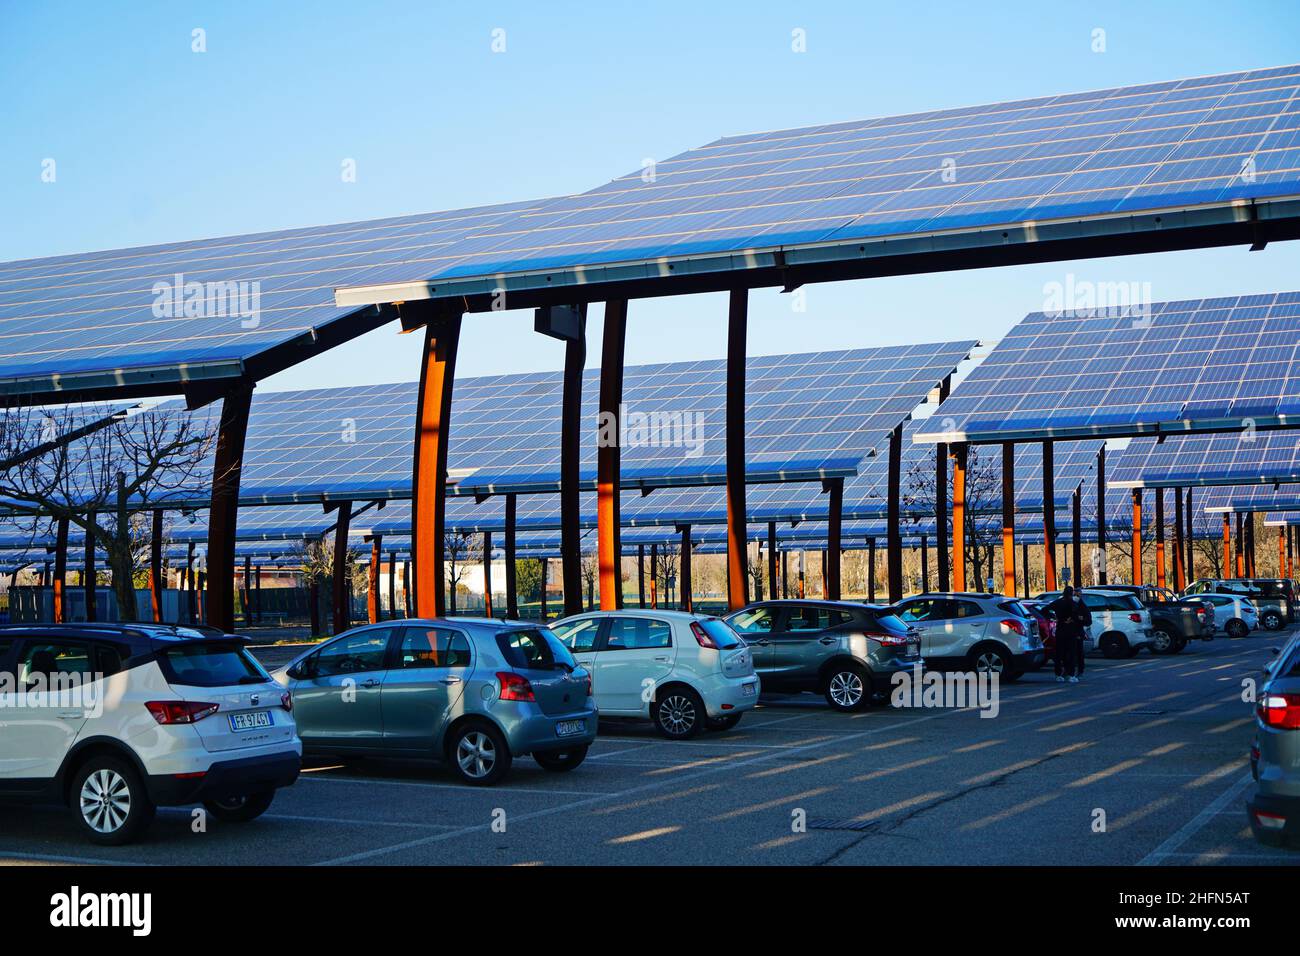 Pannelli solari in un parcheggio. Le aziende stanno installando fonti di energia rinnovabile per ridurre la loro impronta di carbonio. Padova, Italia - Gennaio 2022 Foto Stock